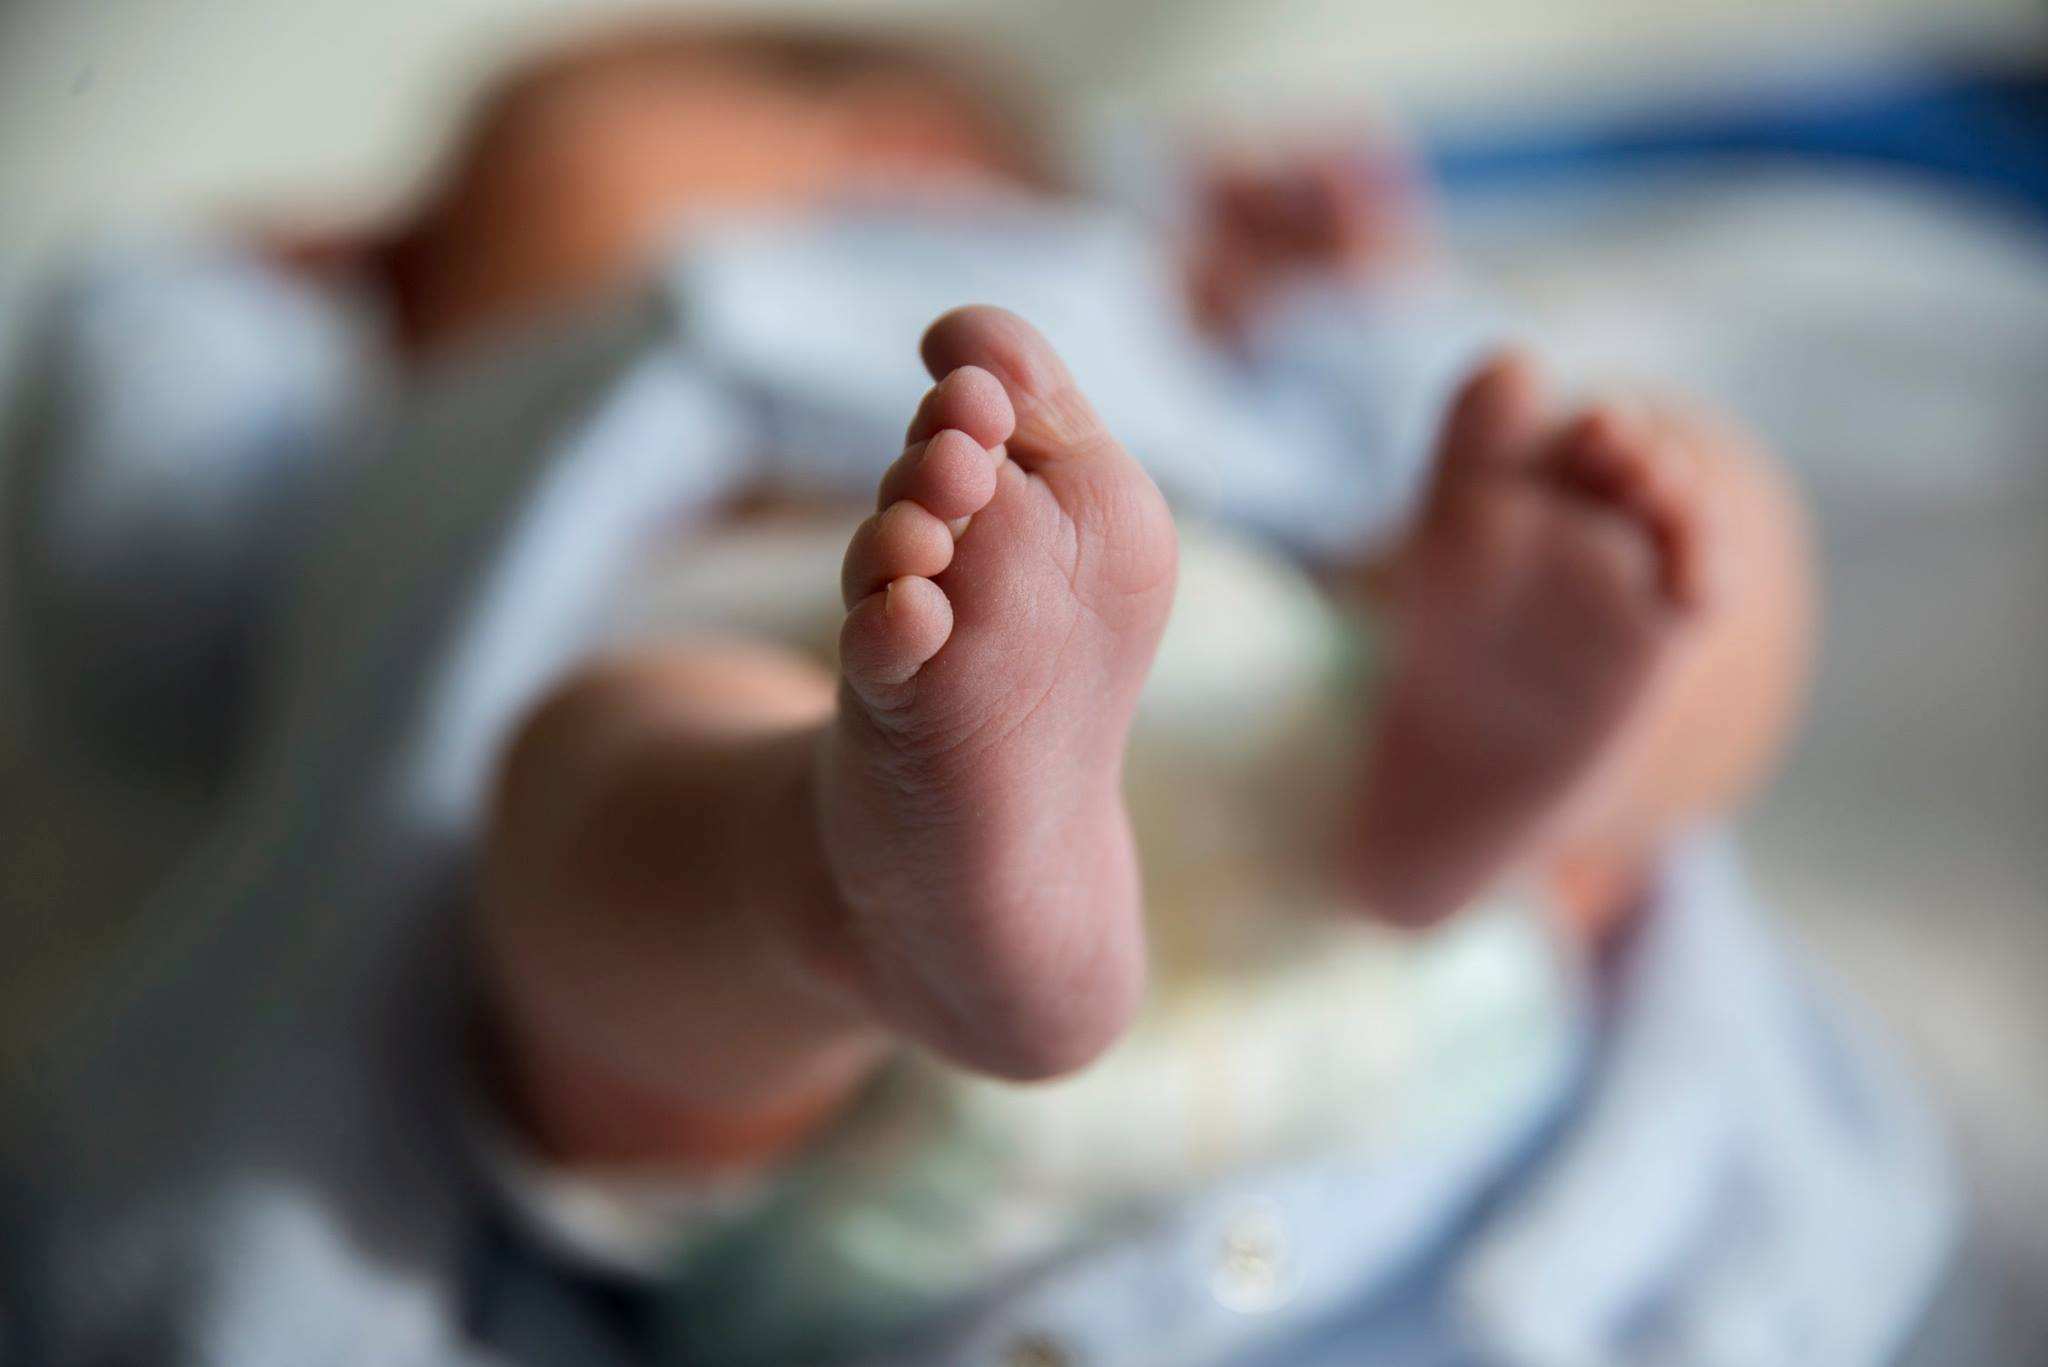 İran'da 7 Günlük Bebek Covid-19 Sebebiyle Yaşamını Yitirdi